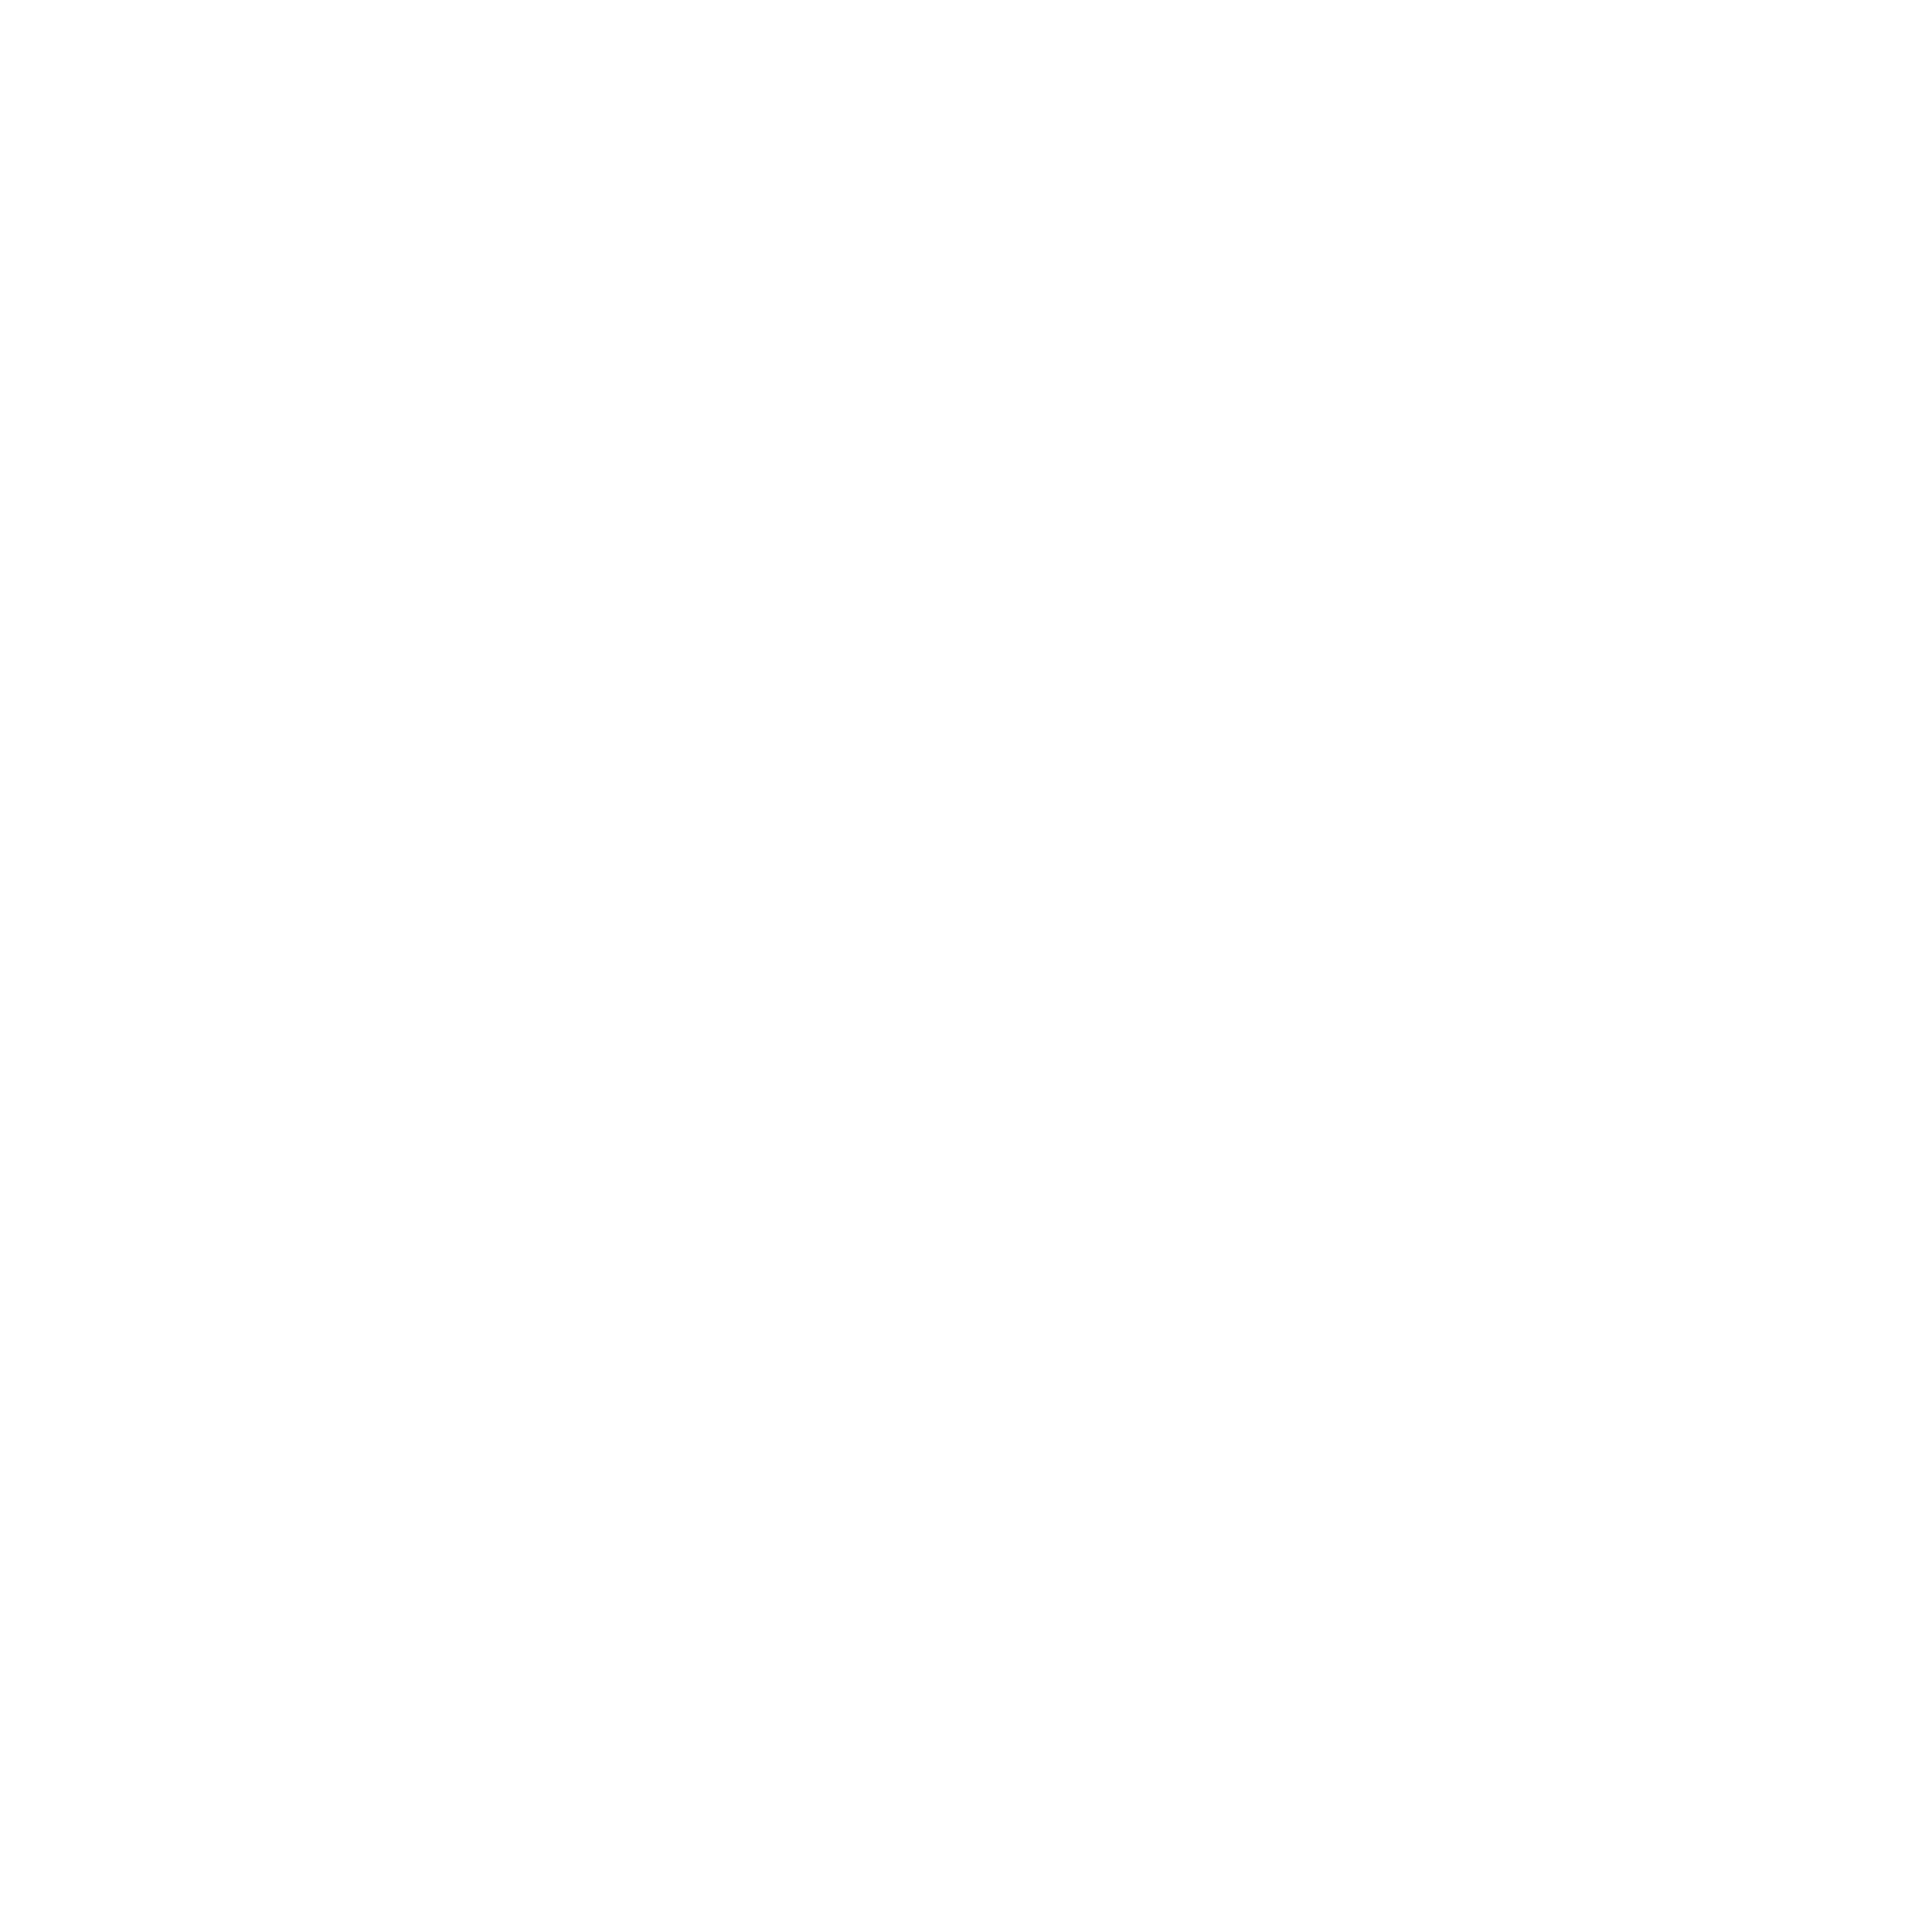 Joburg Logos for Web 2022 JP